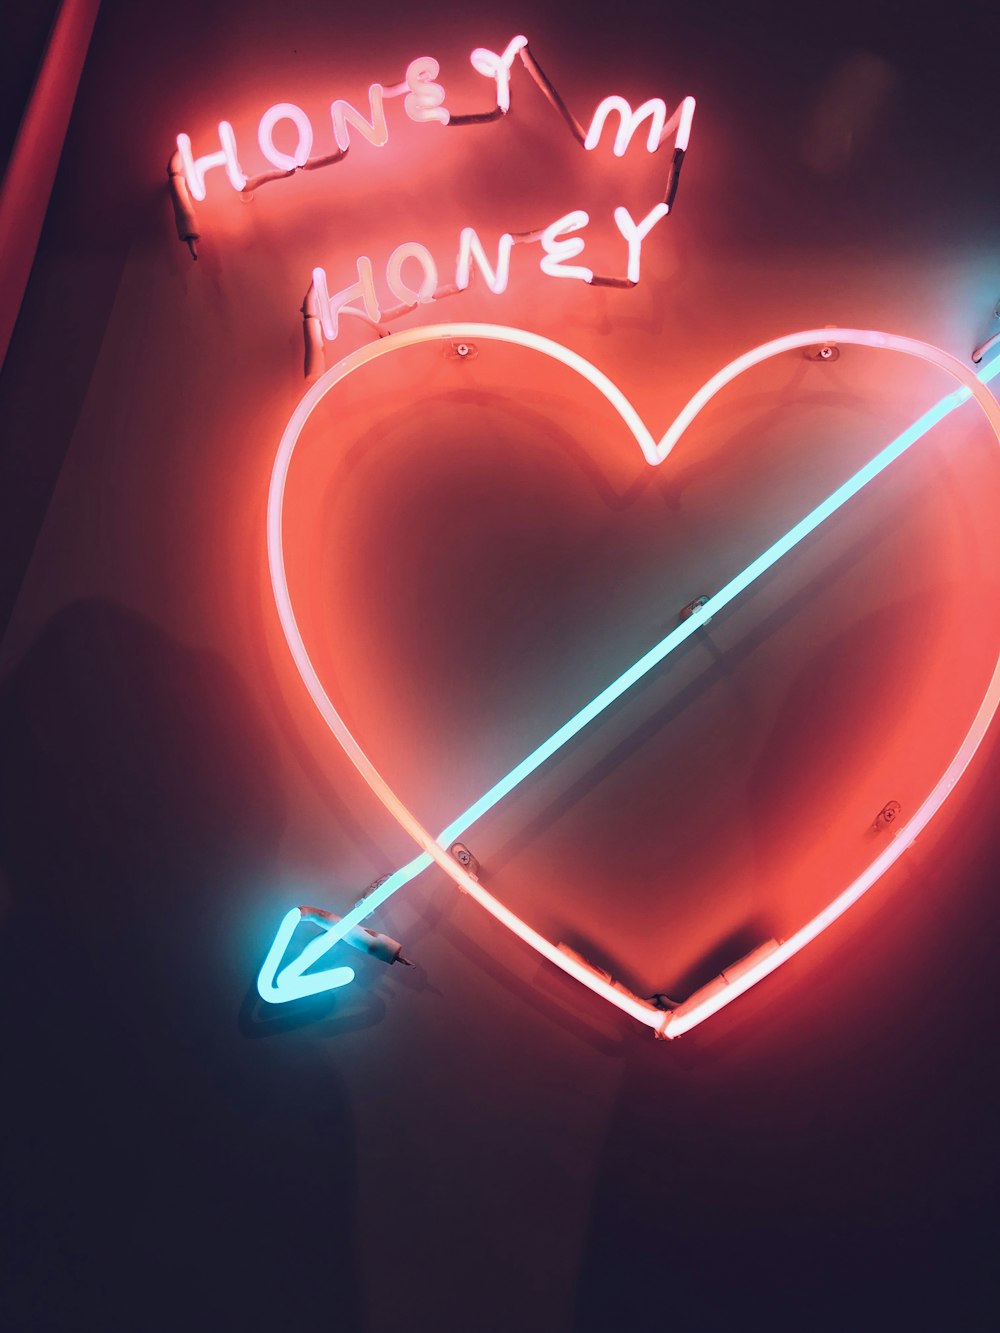 Heart led signage photo – Free Neon Image on Unsplash